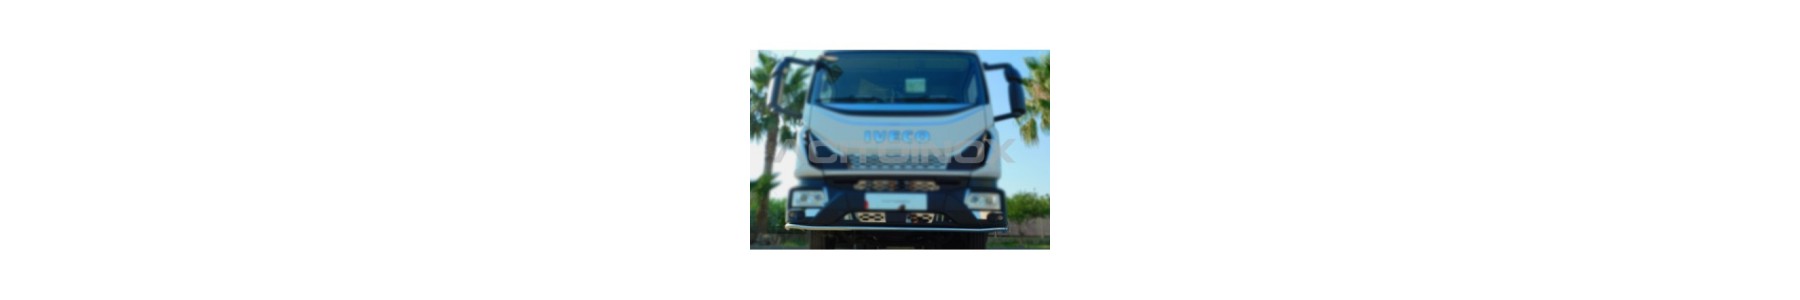 Rampes basses pour votre camion Iveco EUROCARGO - 22h22: Vente accessoires tuning poids lourd